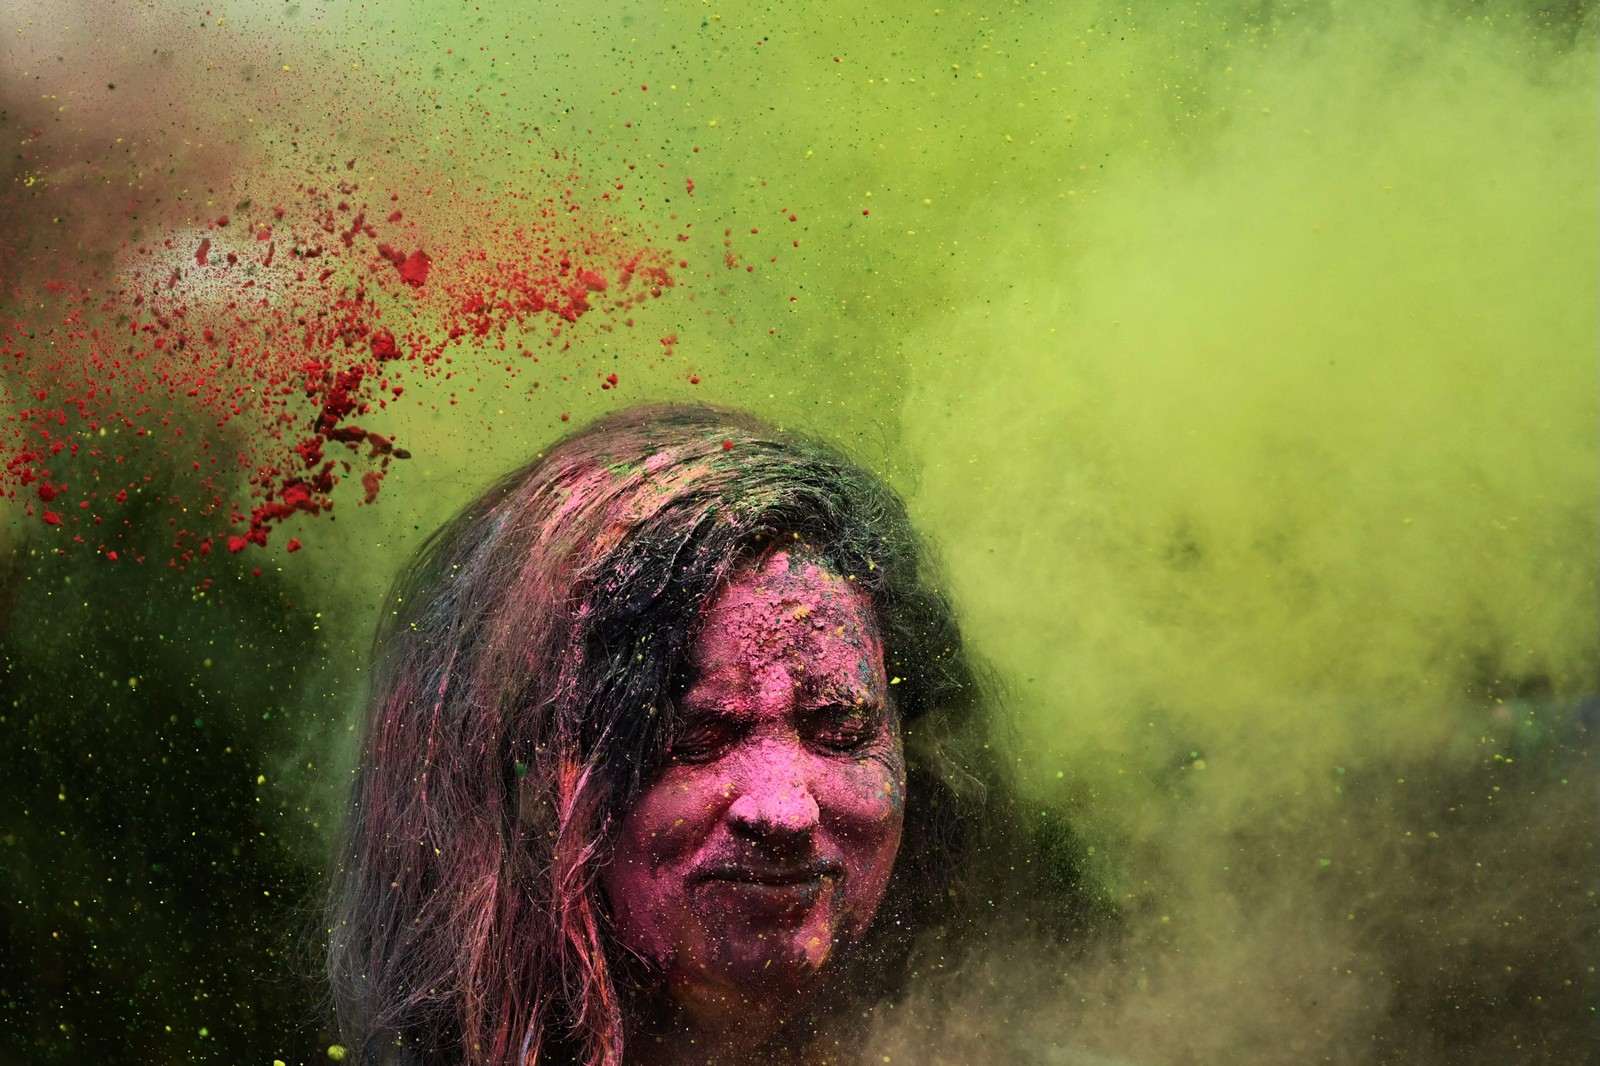 Folião toma banho de 'Gulal' (pó colorido) durante as celebrações do Holi, o festival hindu de cores da primavera, em Mumbai, Índia — Foto: INDRANIL MUKHERJEE/AFP